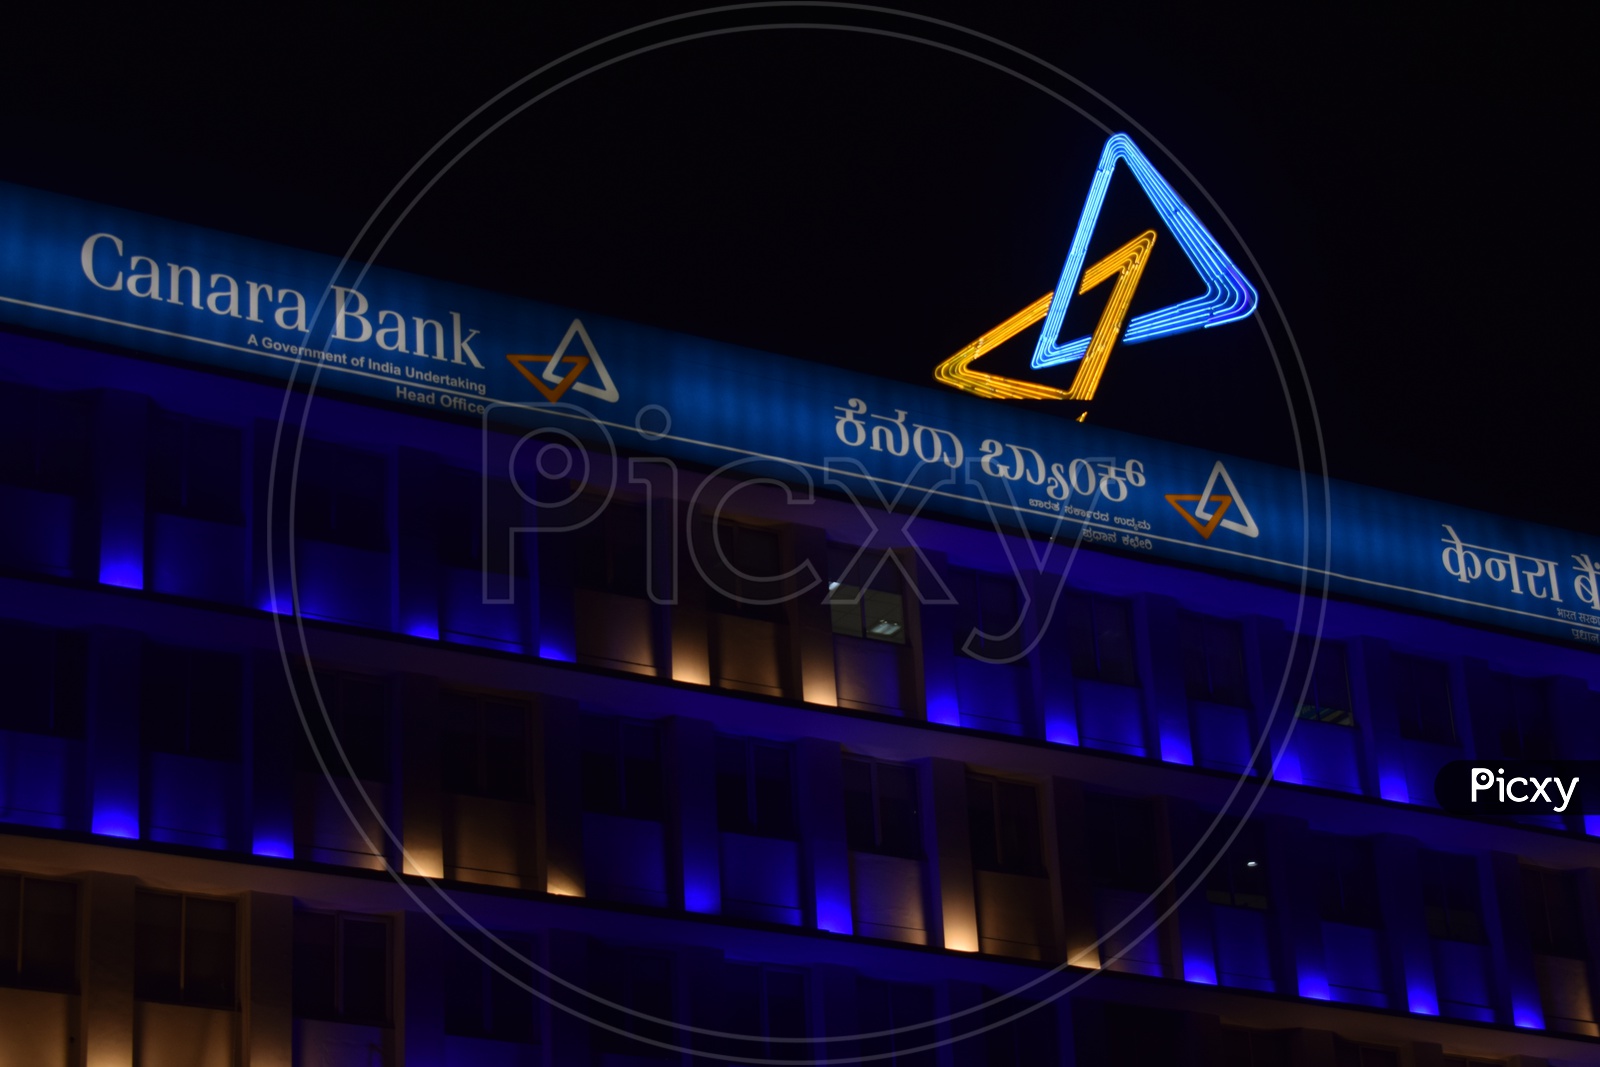 Canara bank building at night